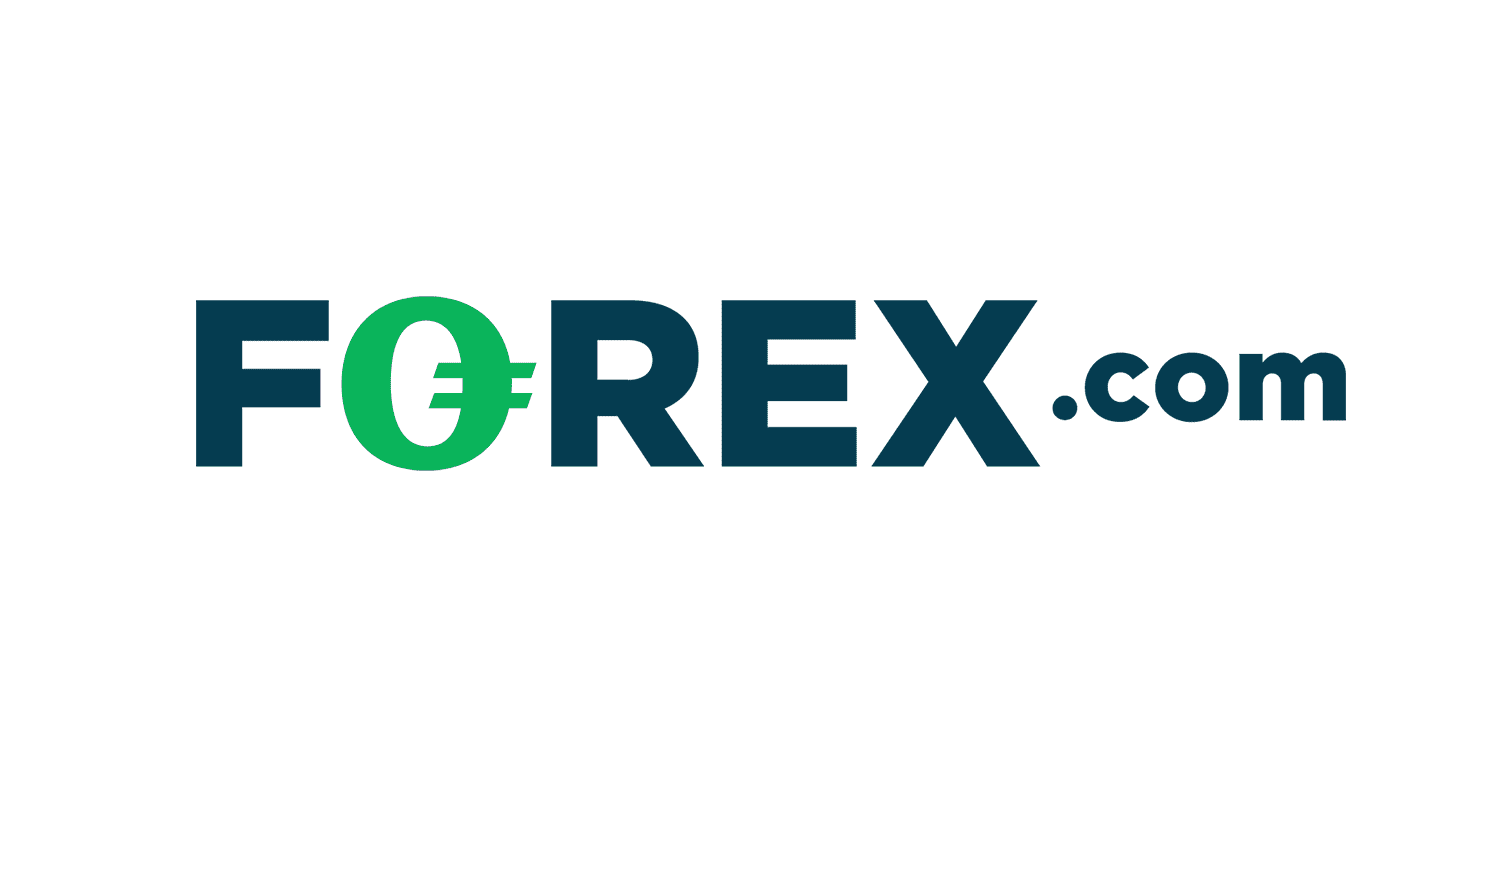 Sàn Forex.com là gì?